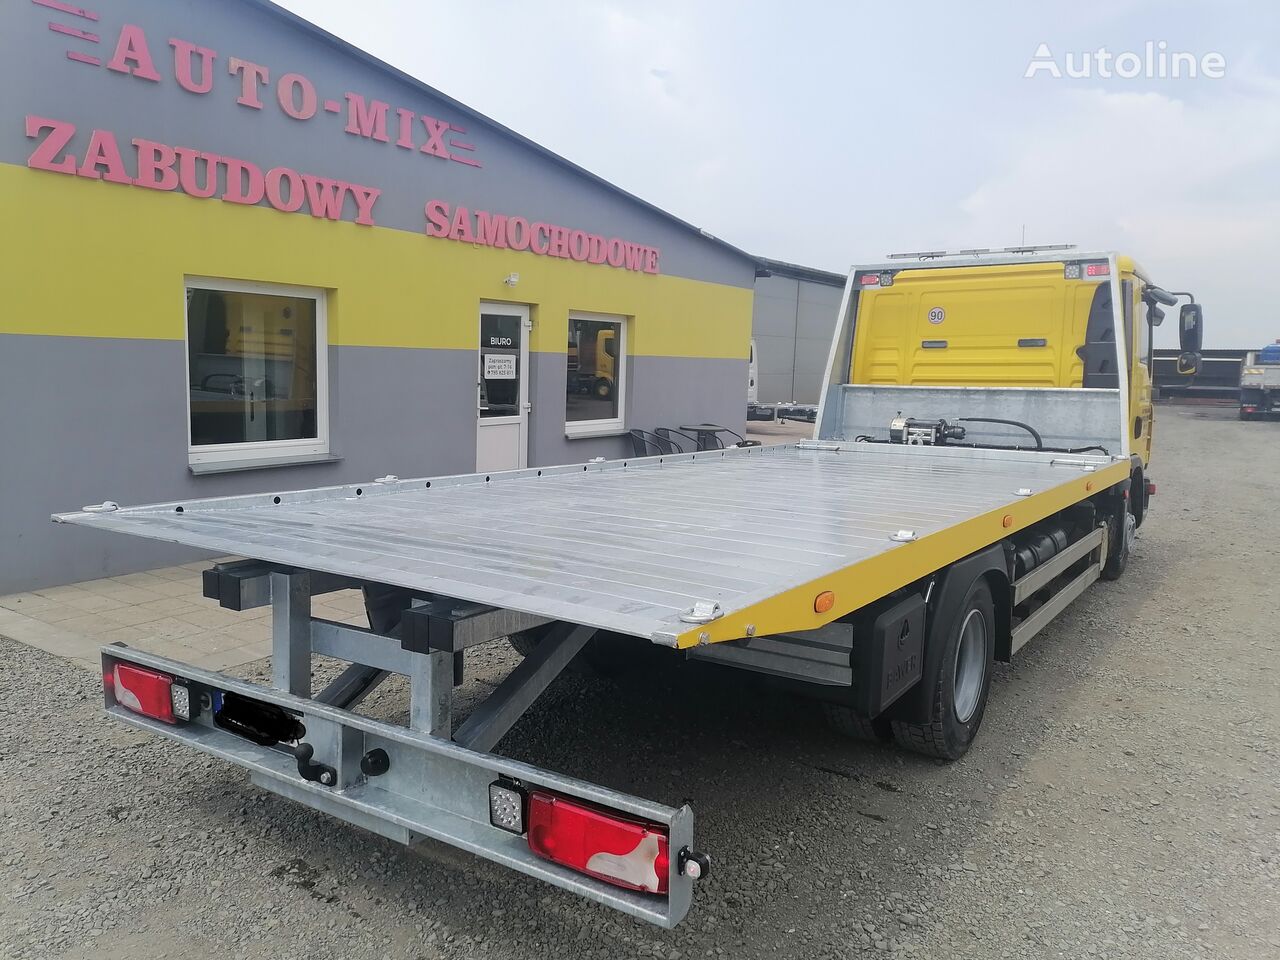 new DAF nowa zabudowa producent pomoc drogowa  dmc 12000 kg tow truck